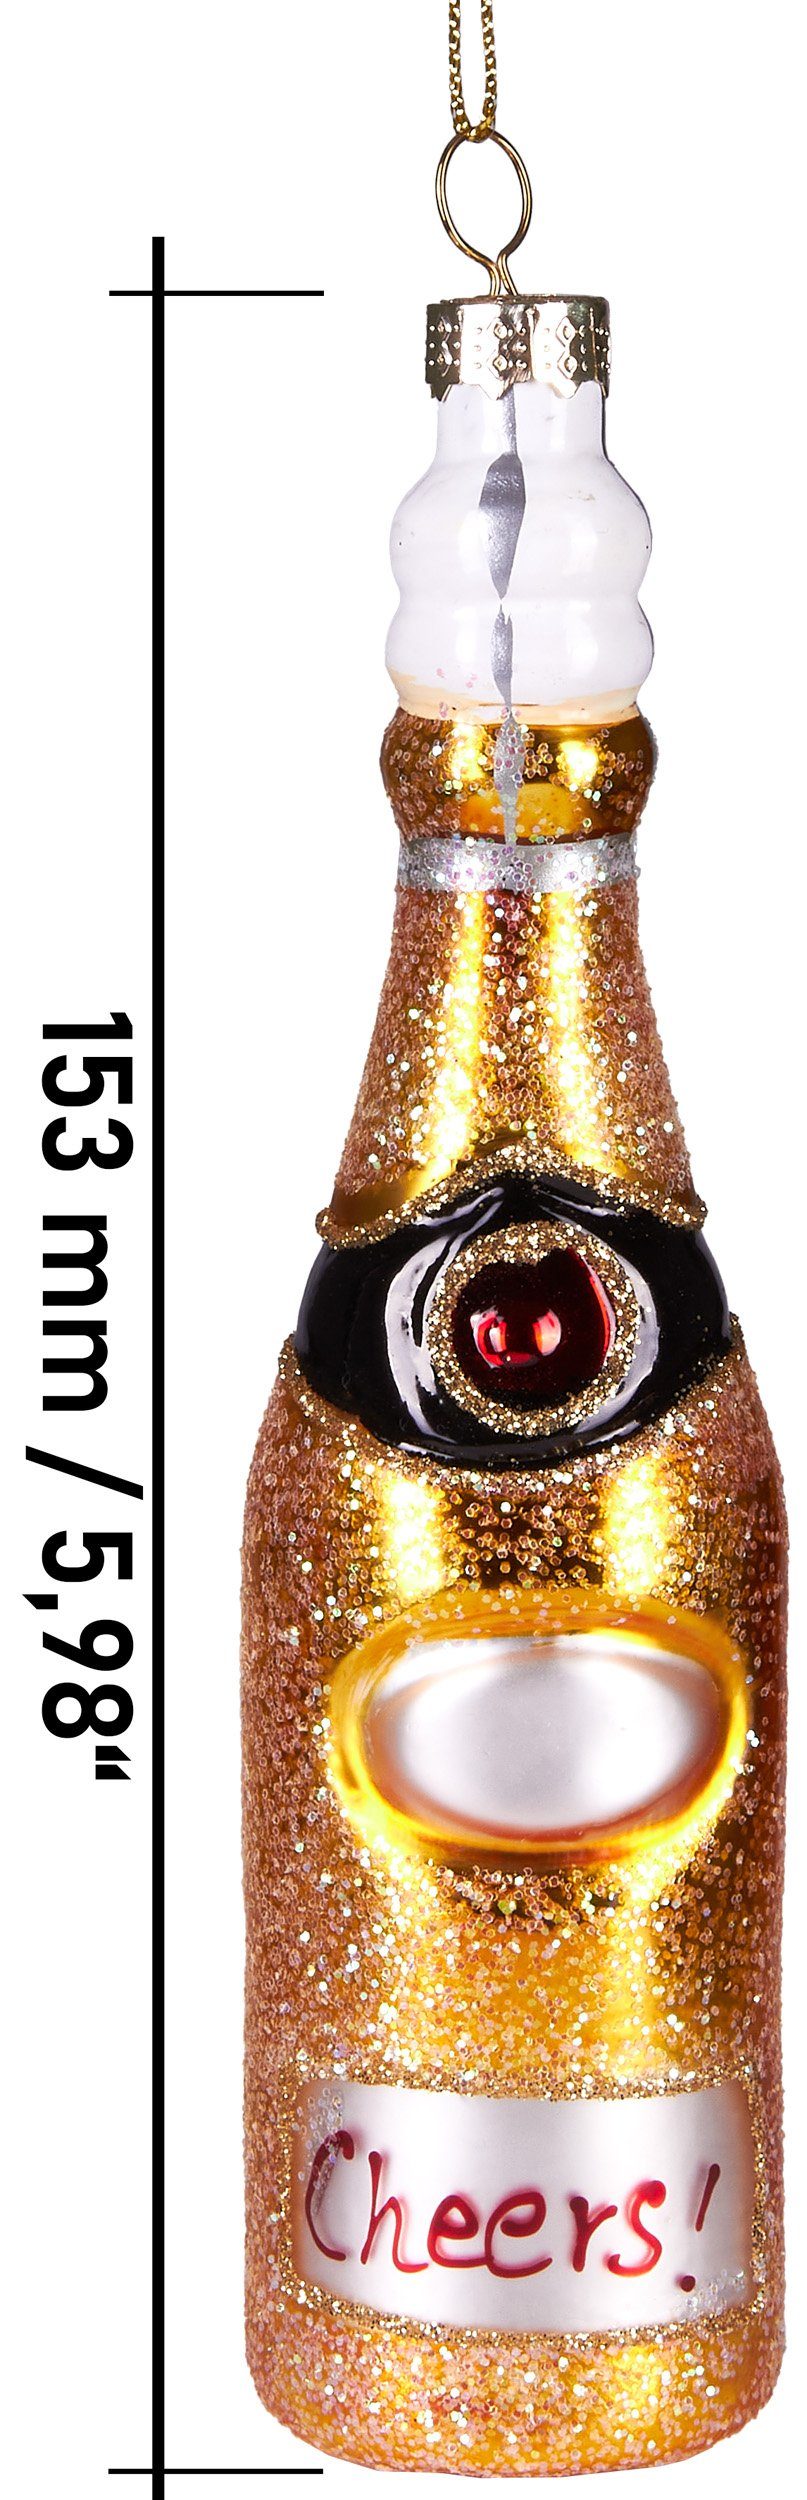 aus Glas, Unikat Handbemalte Champagnerflasche, - BRUBAKER Christbaumschmuck schöner cm 15 Weihnachtskugel Weihnachtsanhänger mundgeblasenes